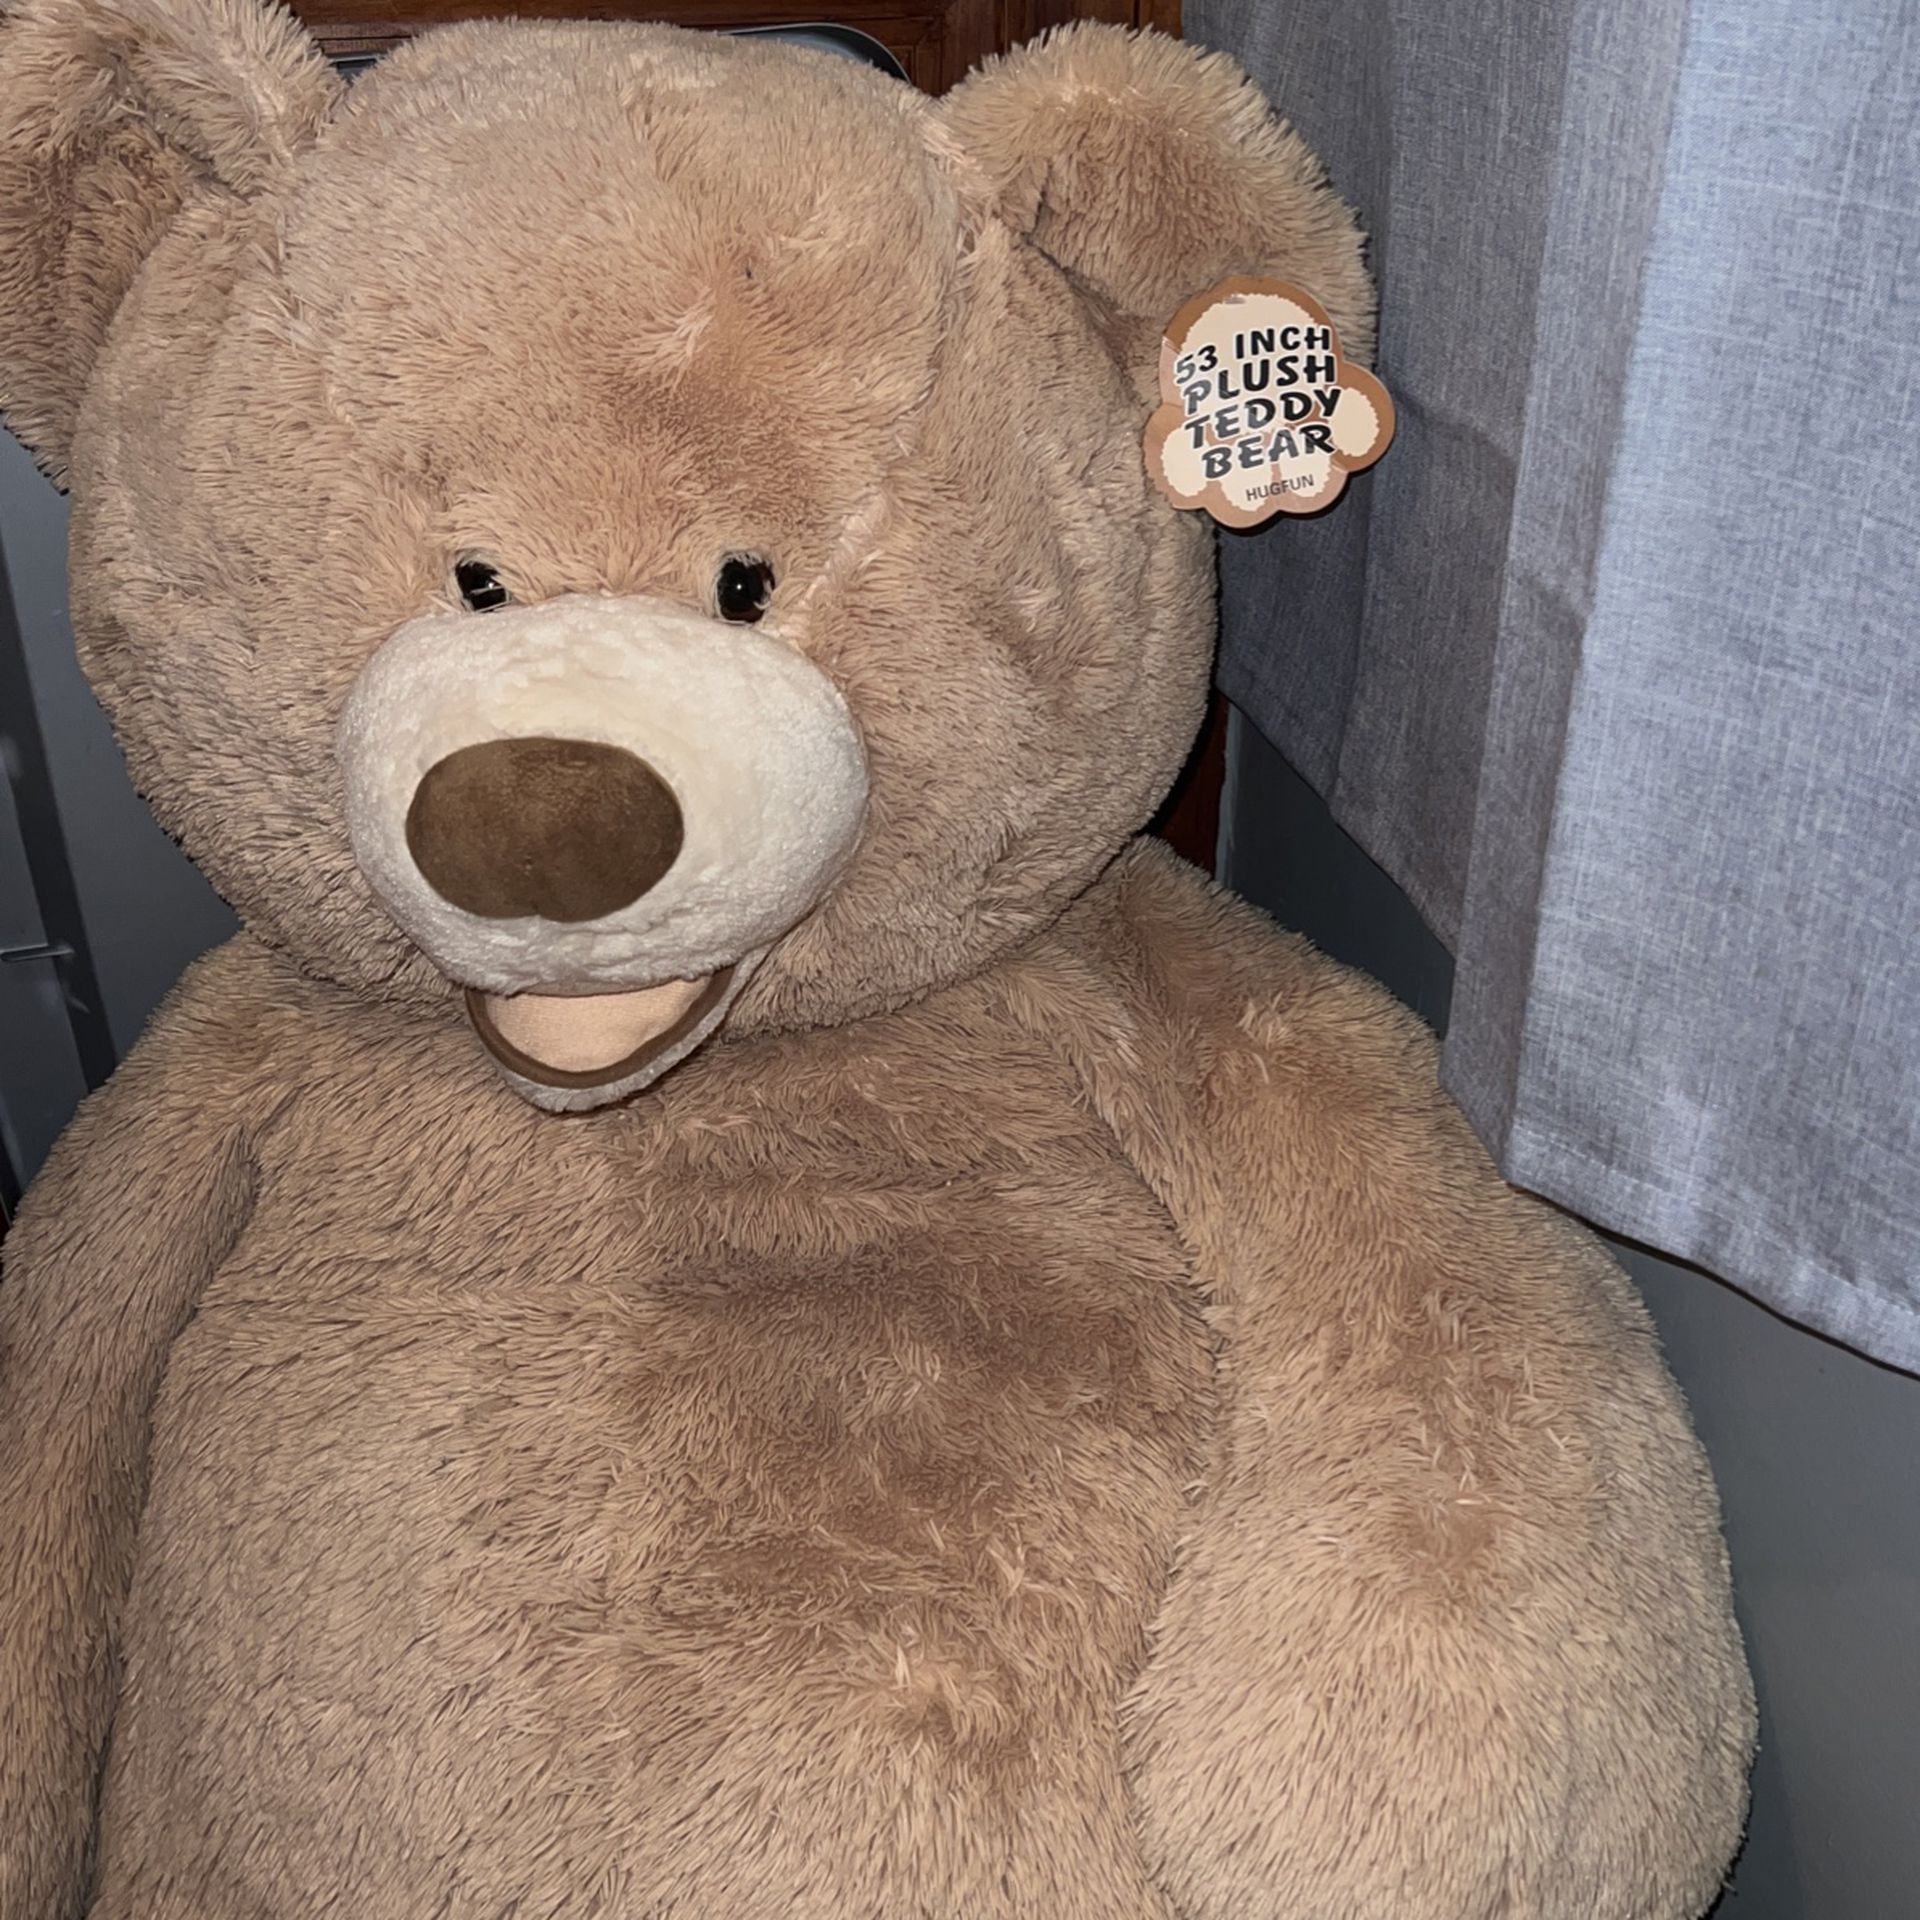 53 Inch Teddy Bear $20